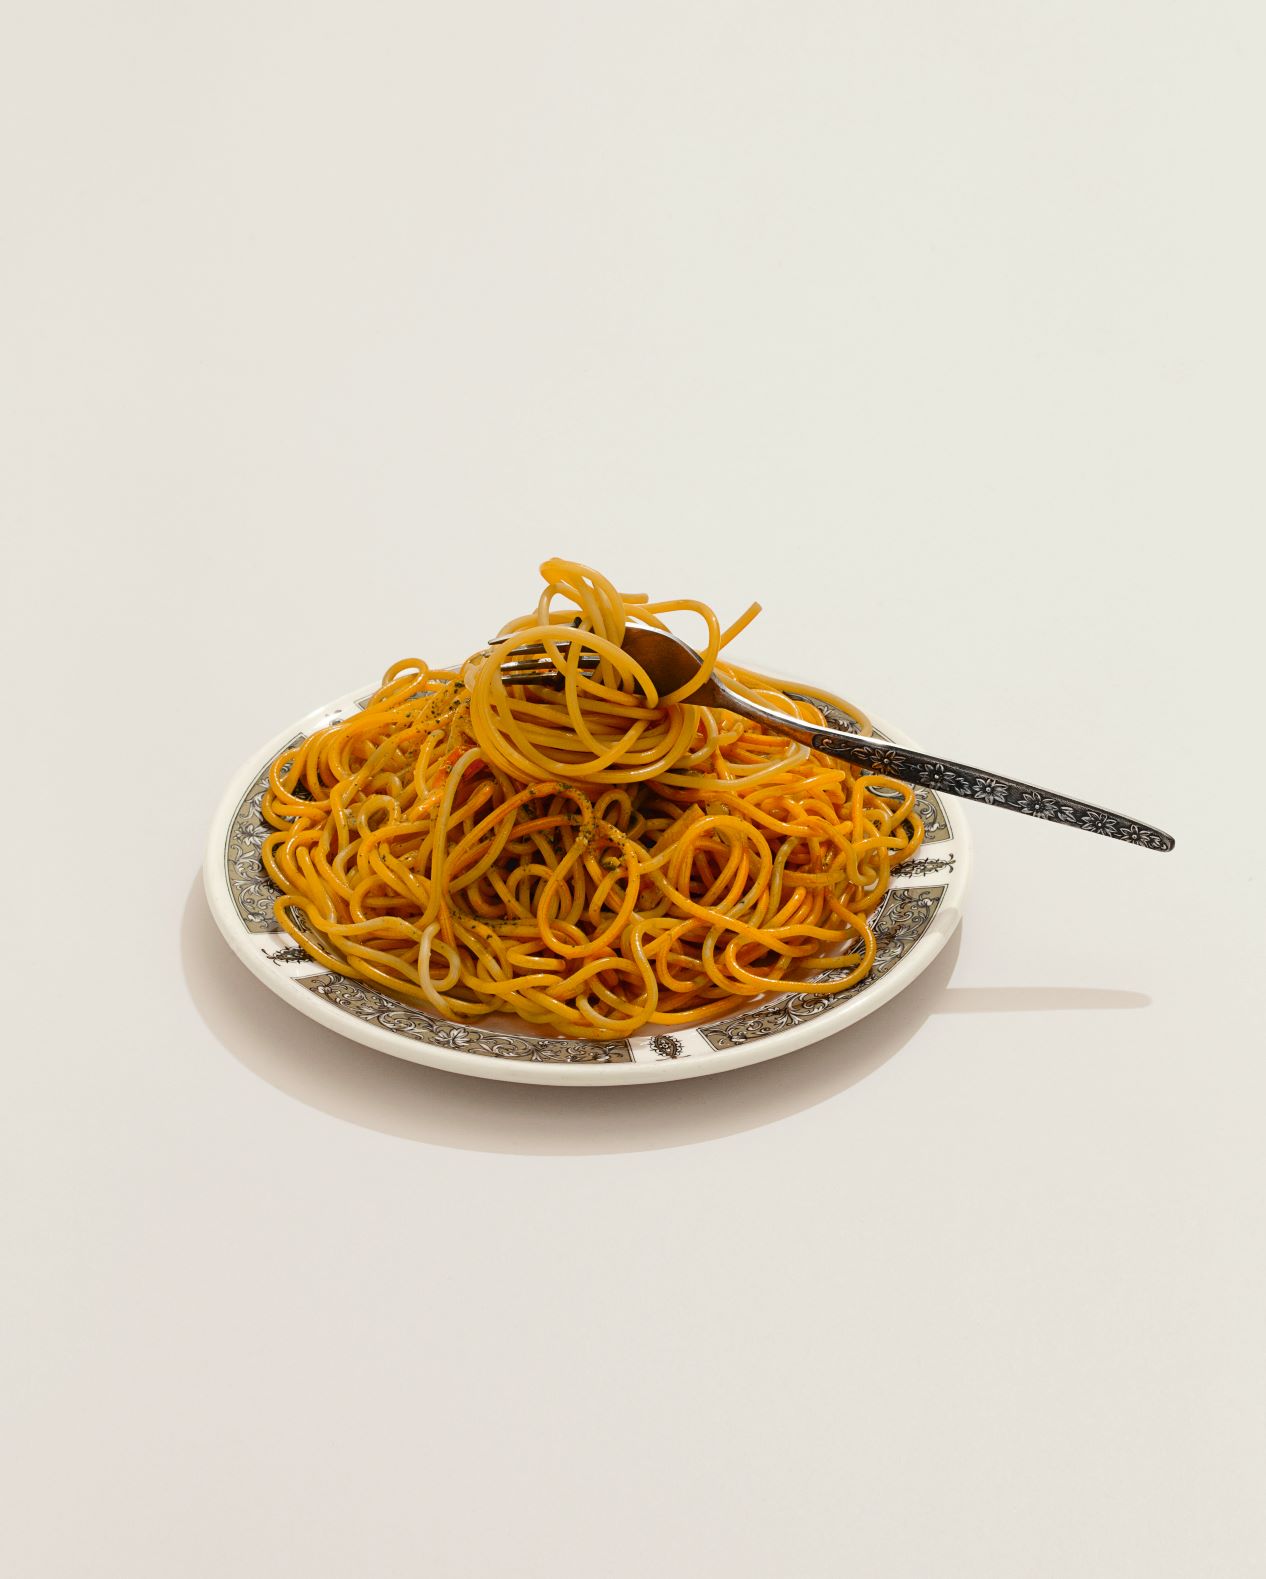 Wax plate of spaghetti. Photograph by Matthew Donaldson